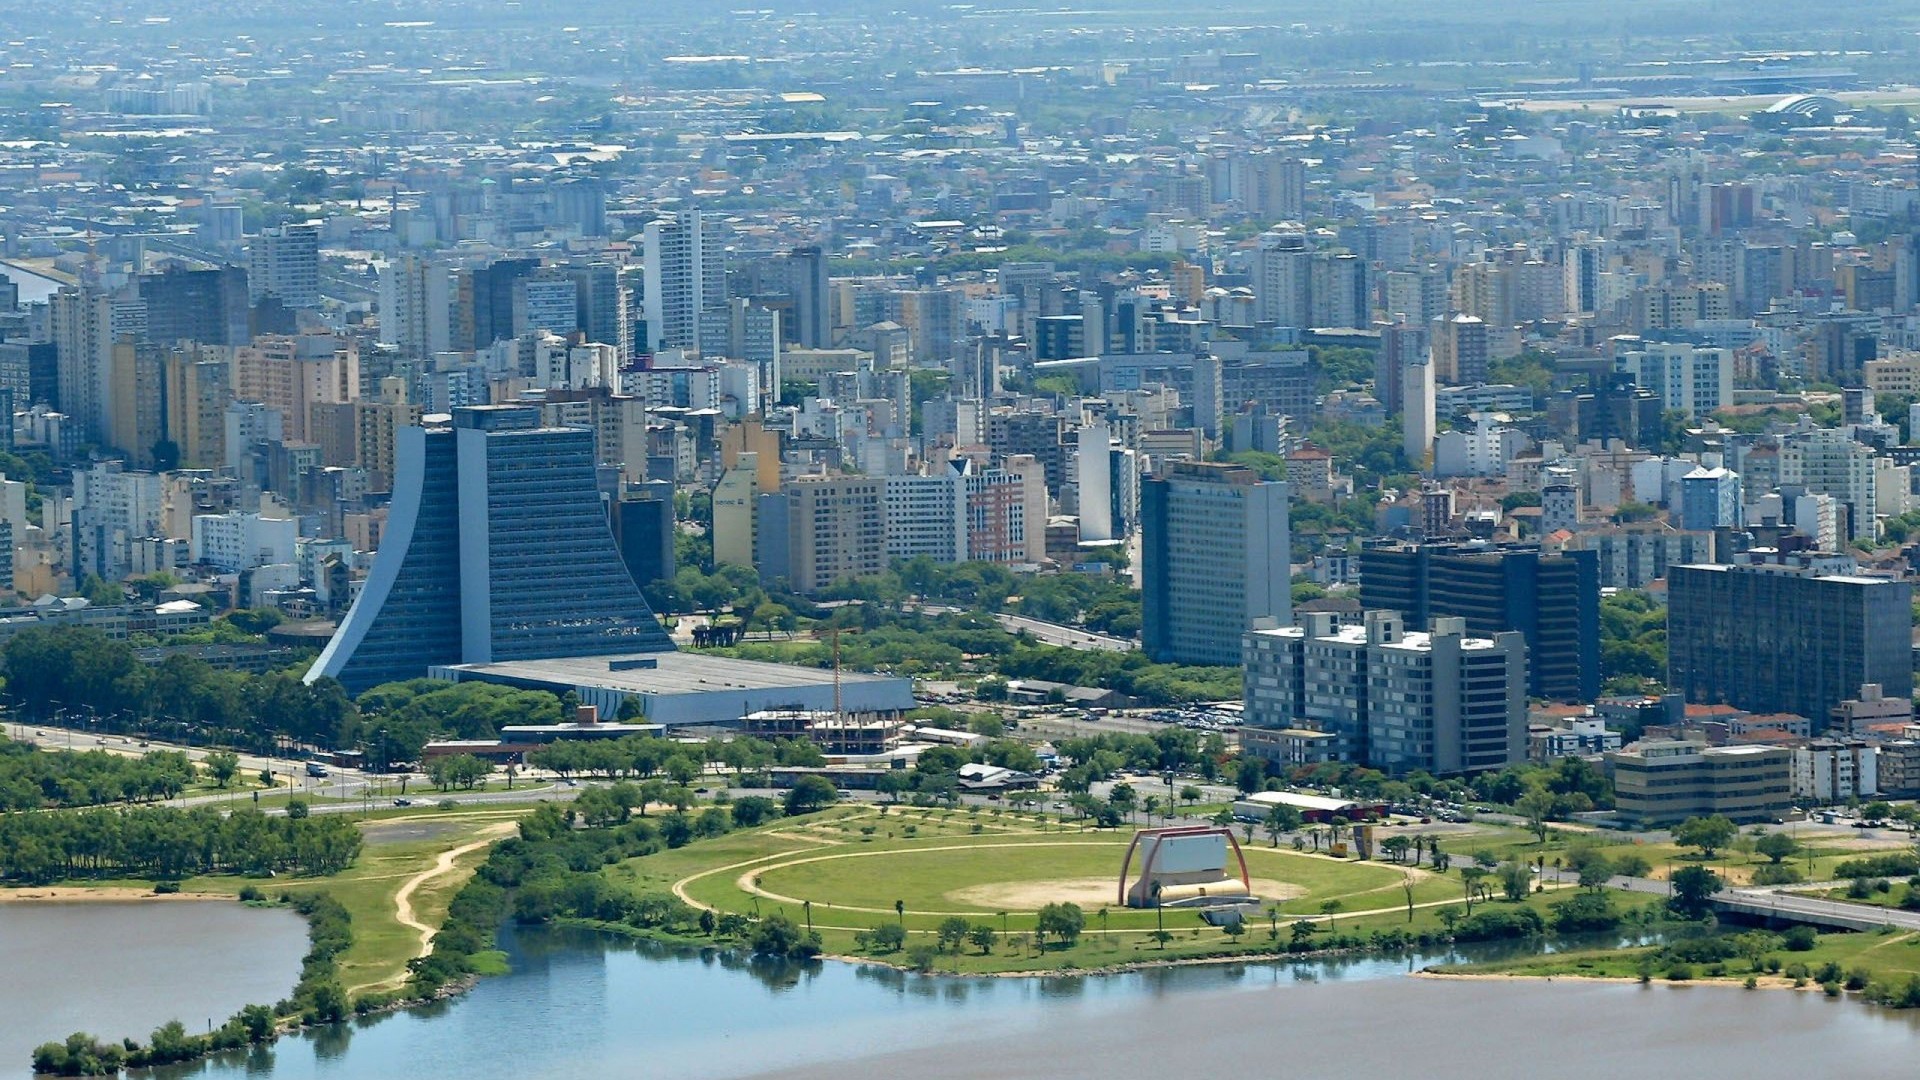 Rio Grande do Sul state capital, Porto Alegre.